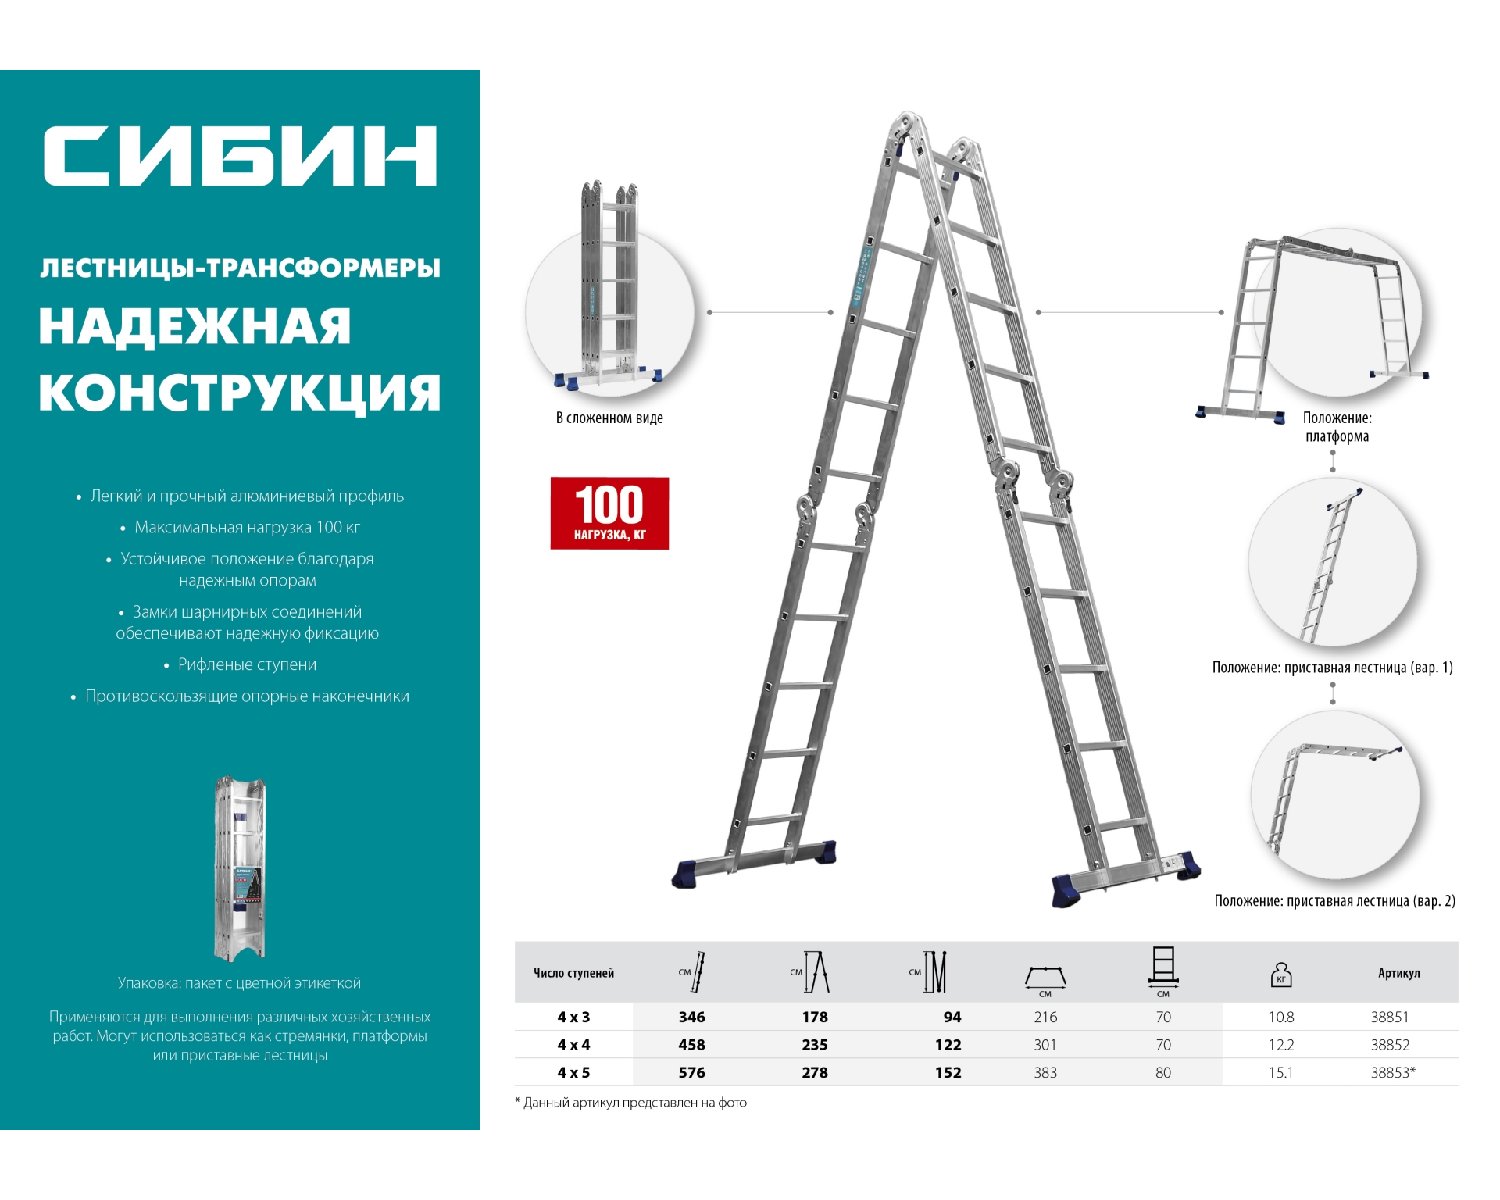 Четырехсекционная лестница-трансформер СИБИН, алюминиевая, 4x3 ступени, ЛТ-43, (38851)